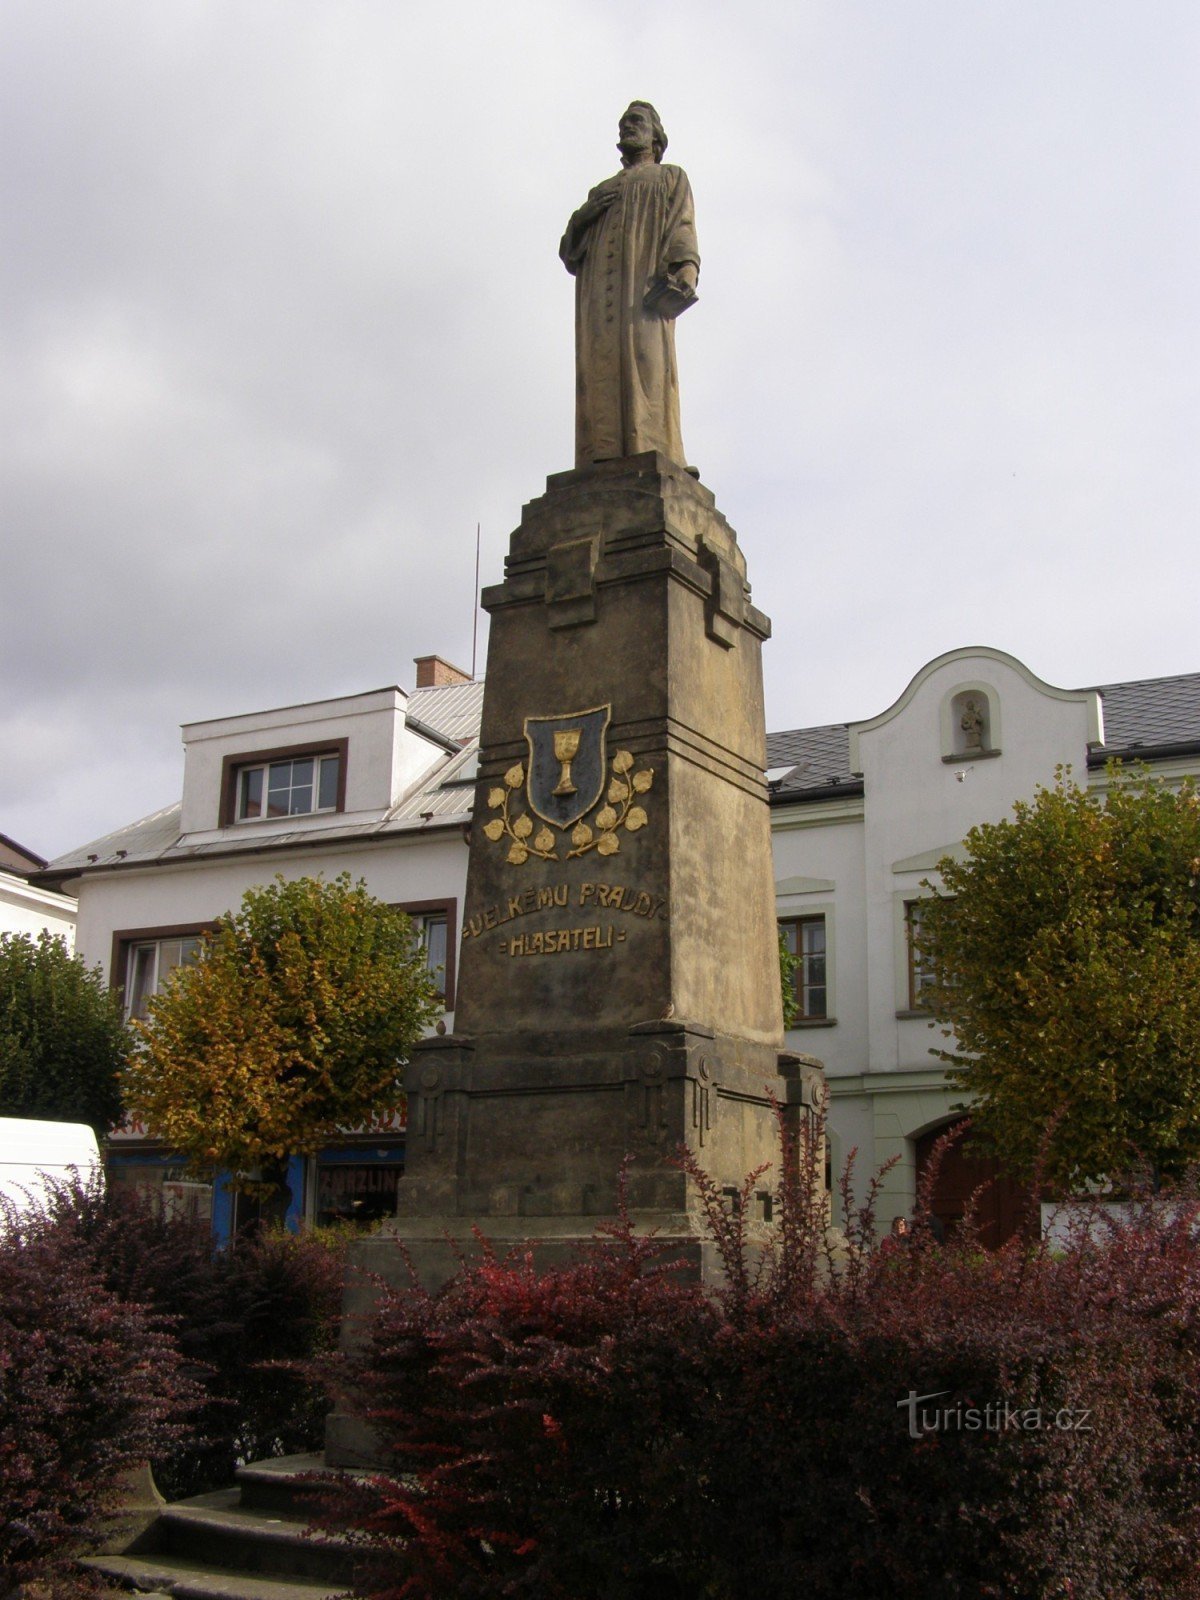 Vamberk - Husovo náměstí, joukko monumentteja